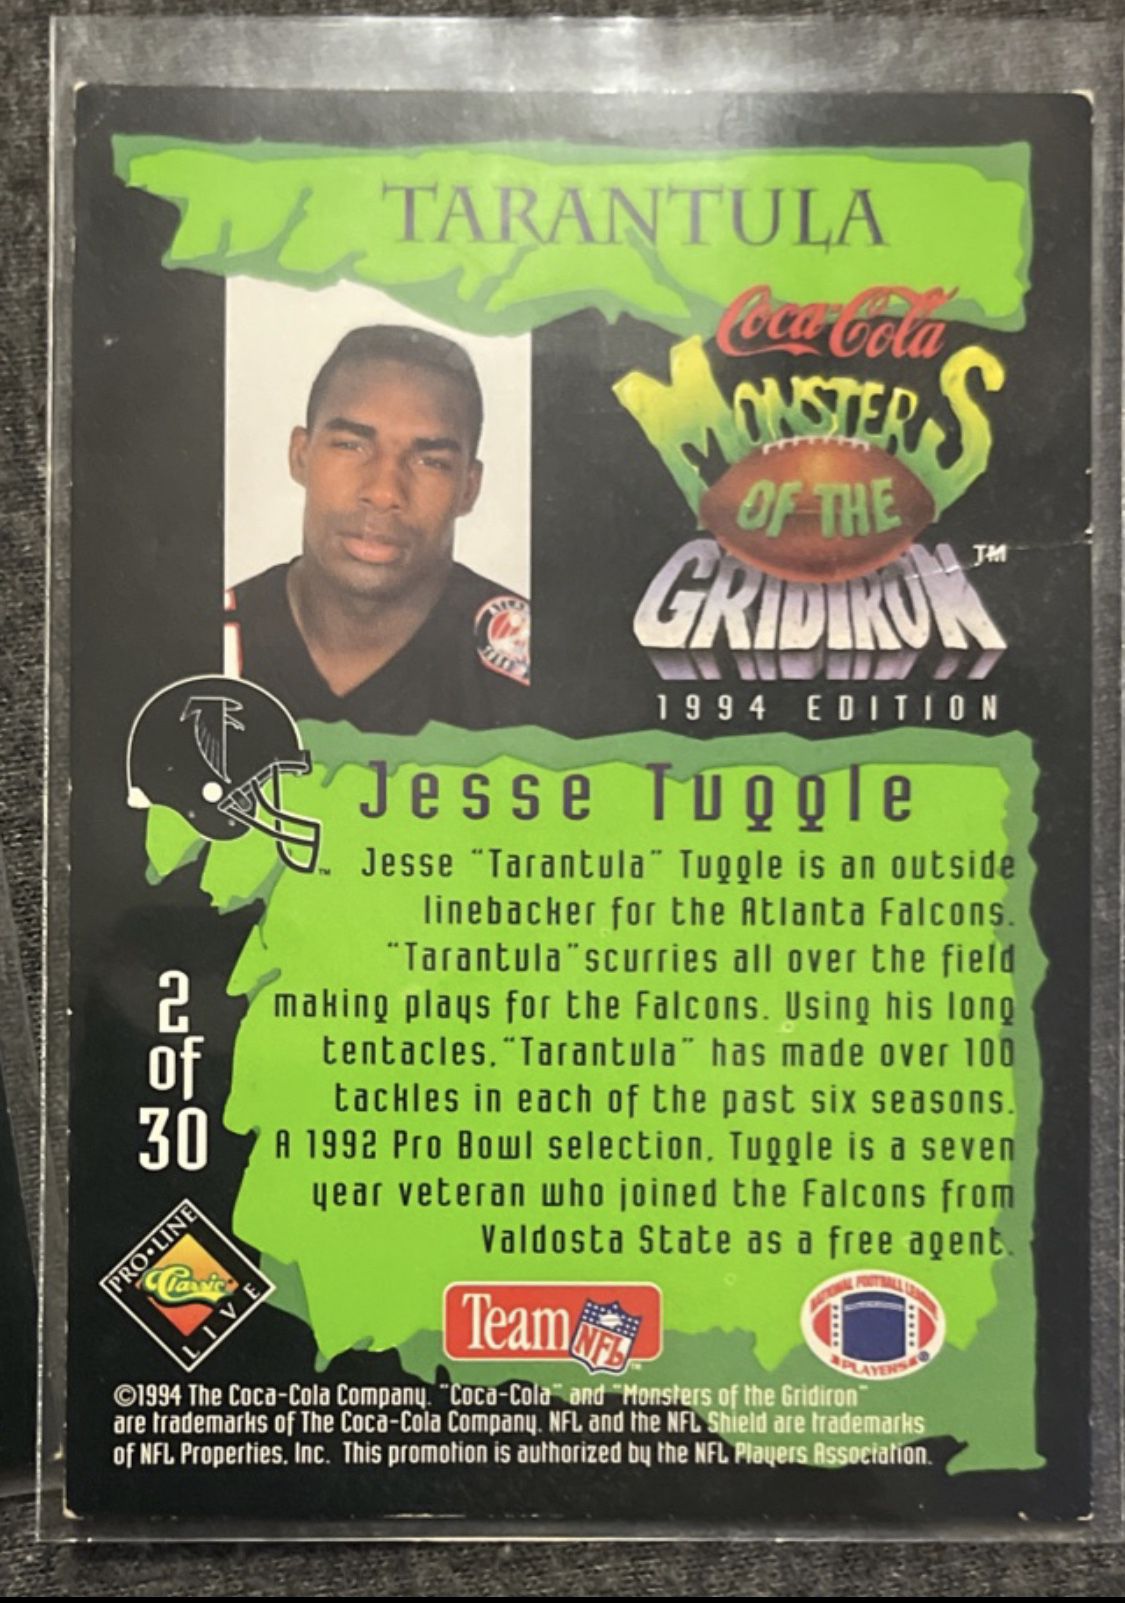 Atlanta Falcons - Happy birthday to the legendary Jessie Tuggle